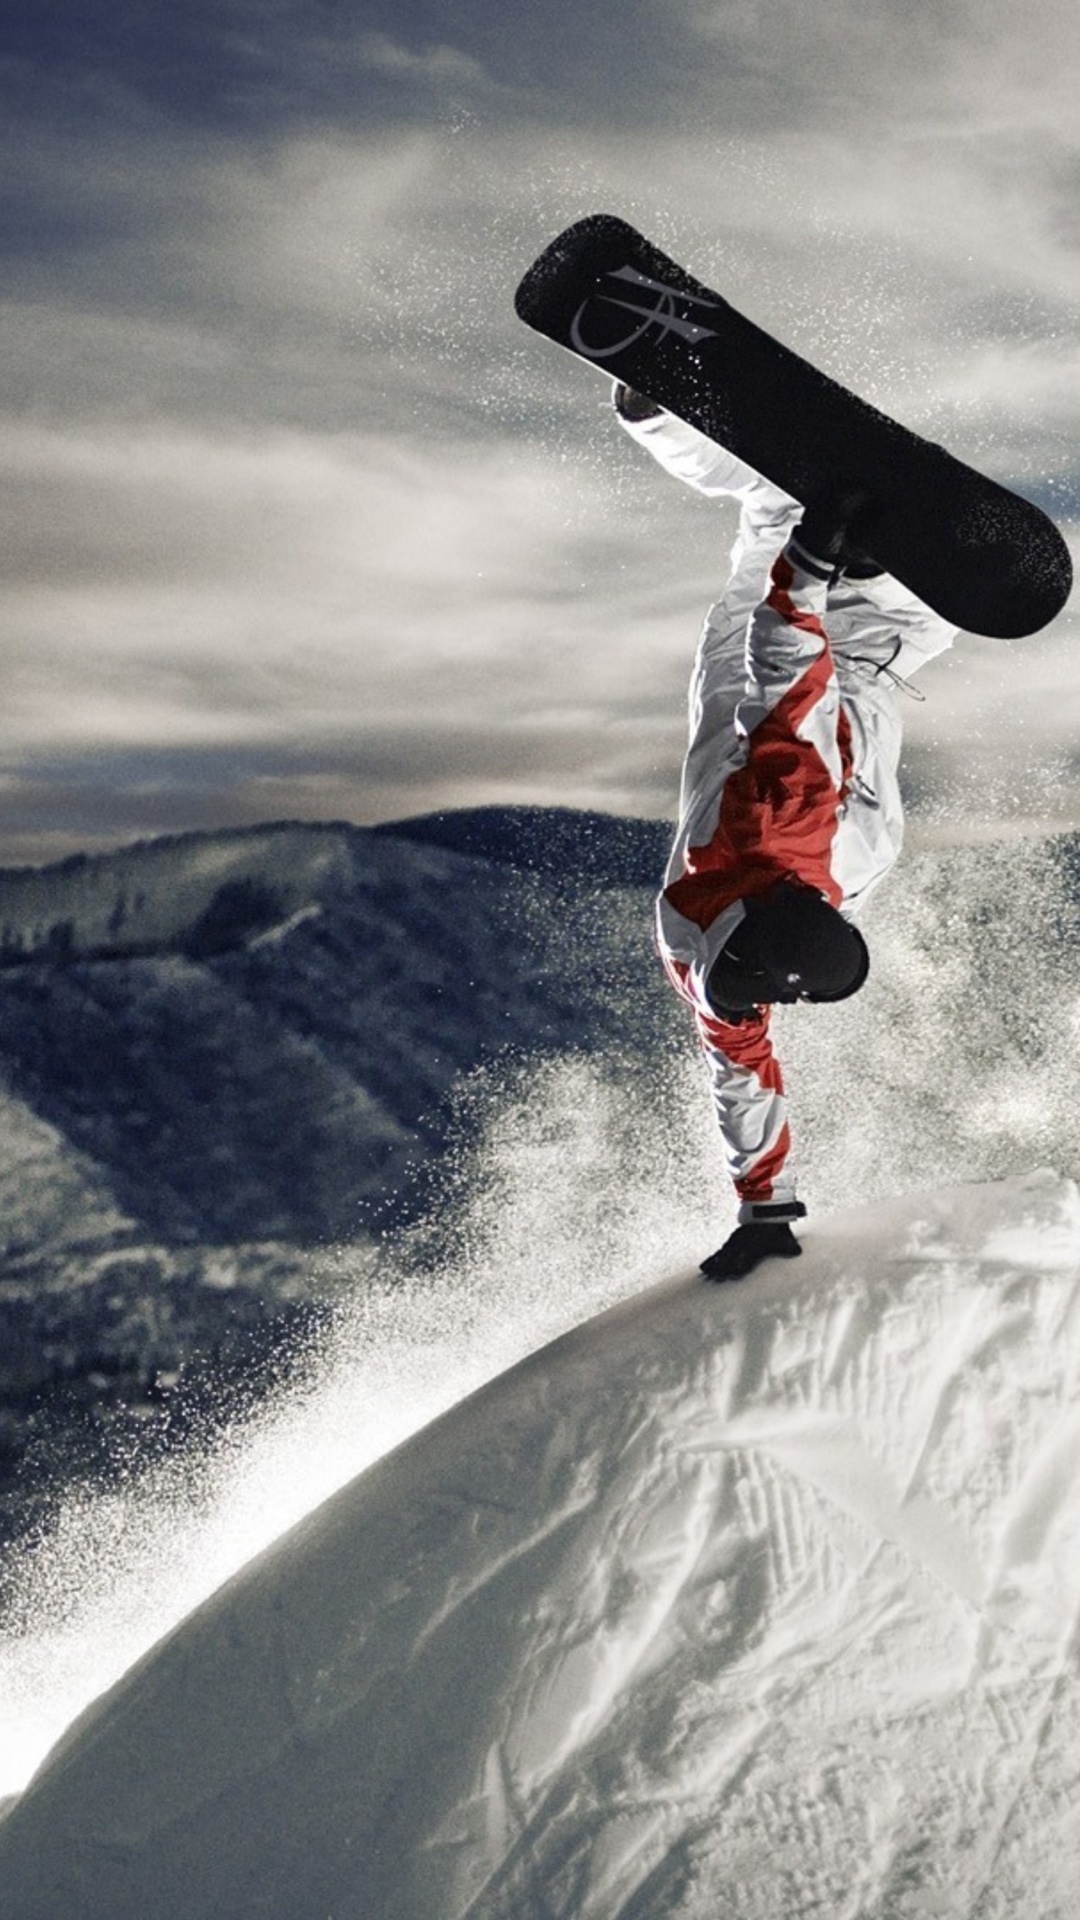 Snowboarding in Austria, Kitzbuhel screenshot #1 1080x1920